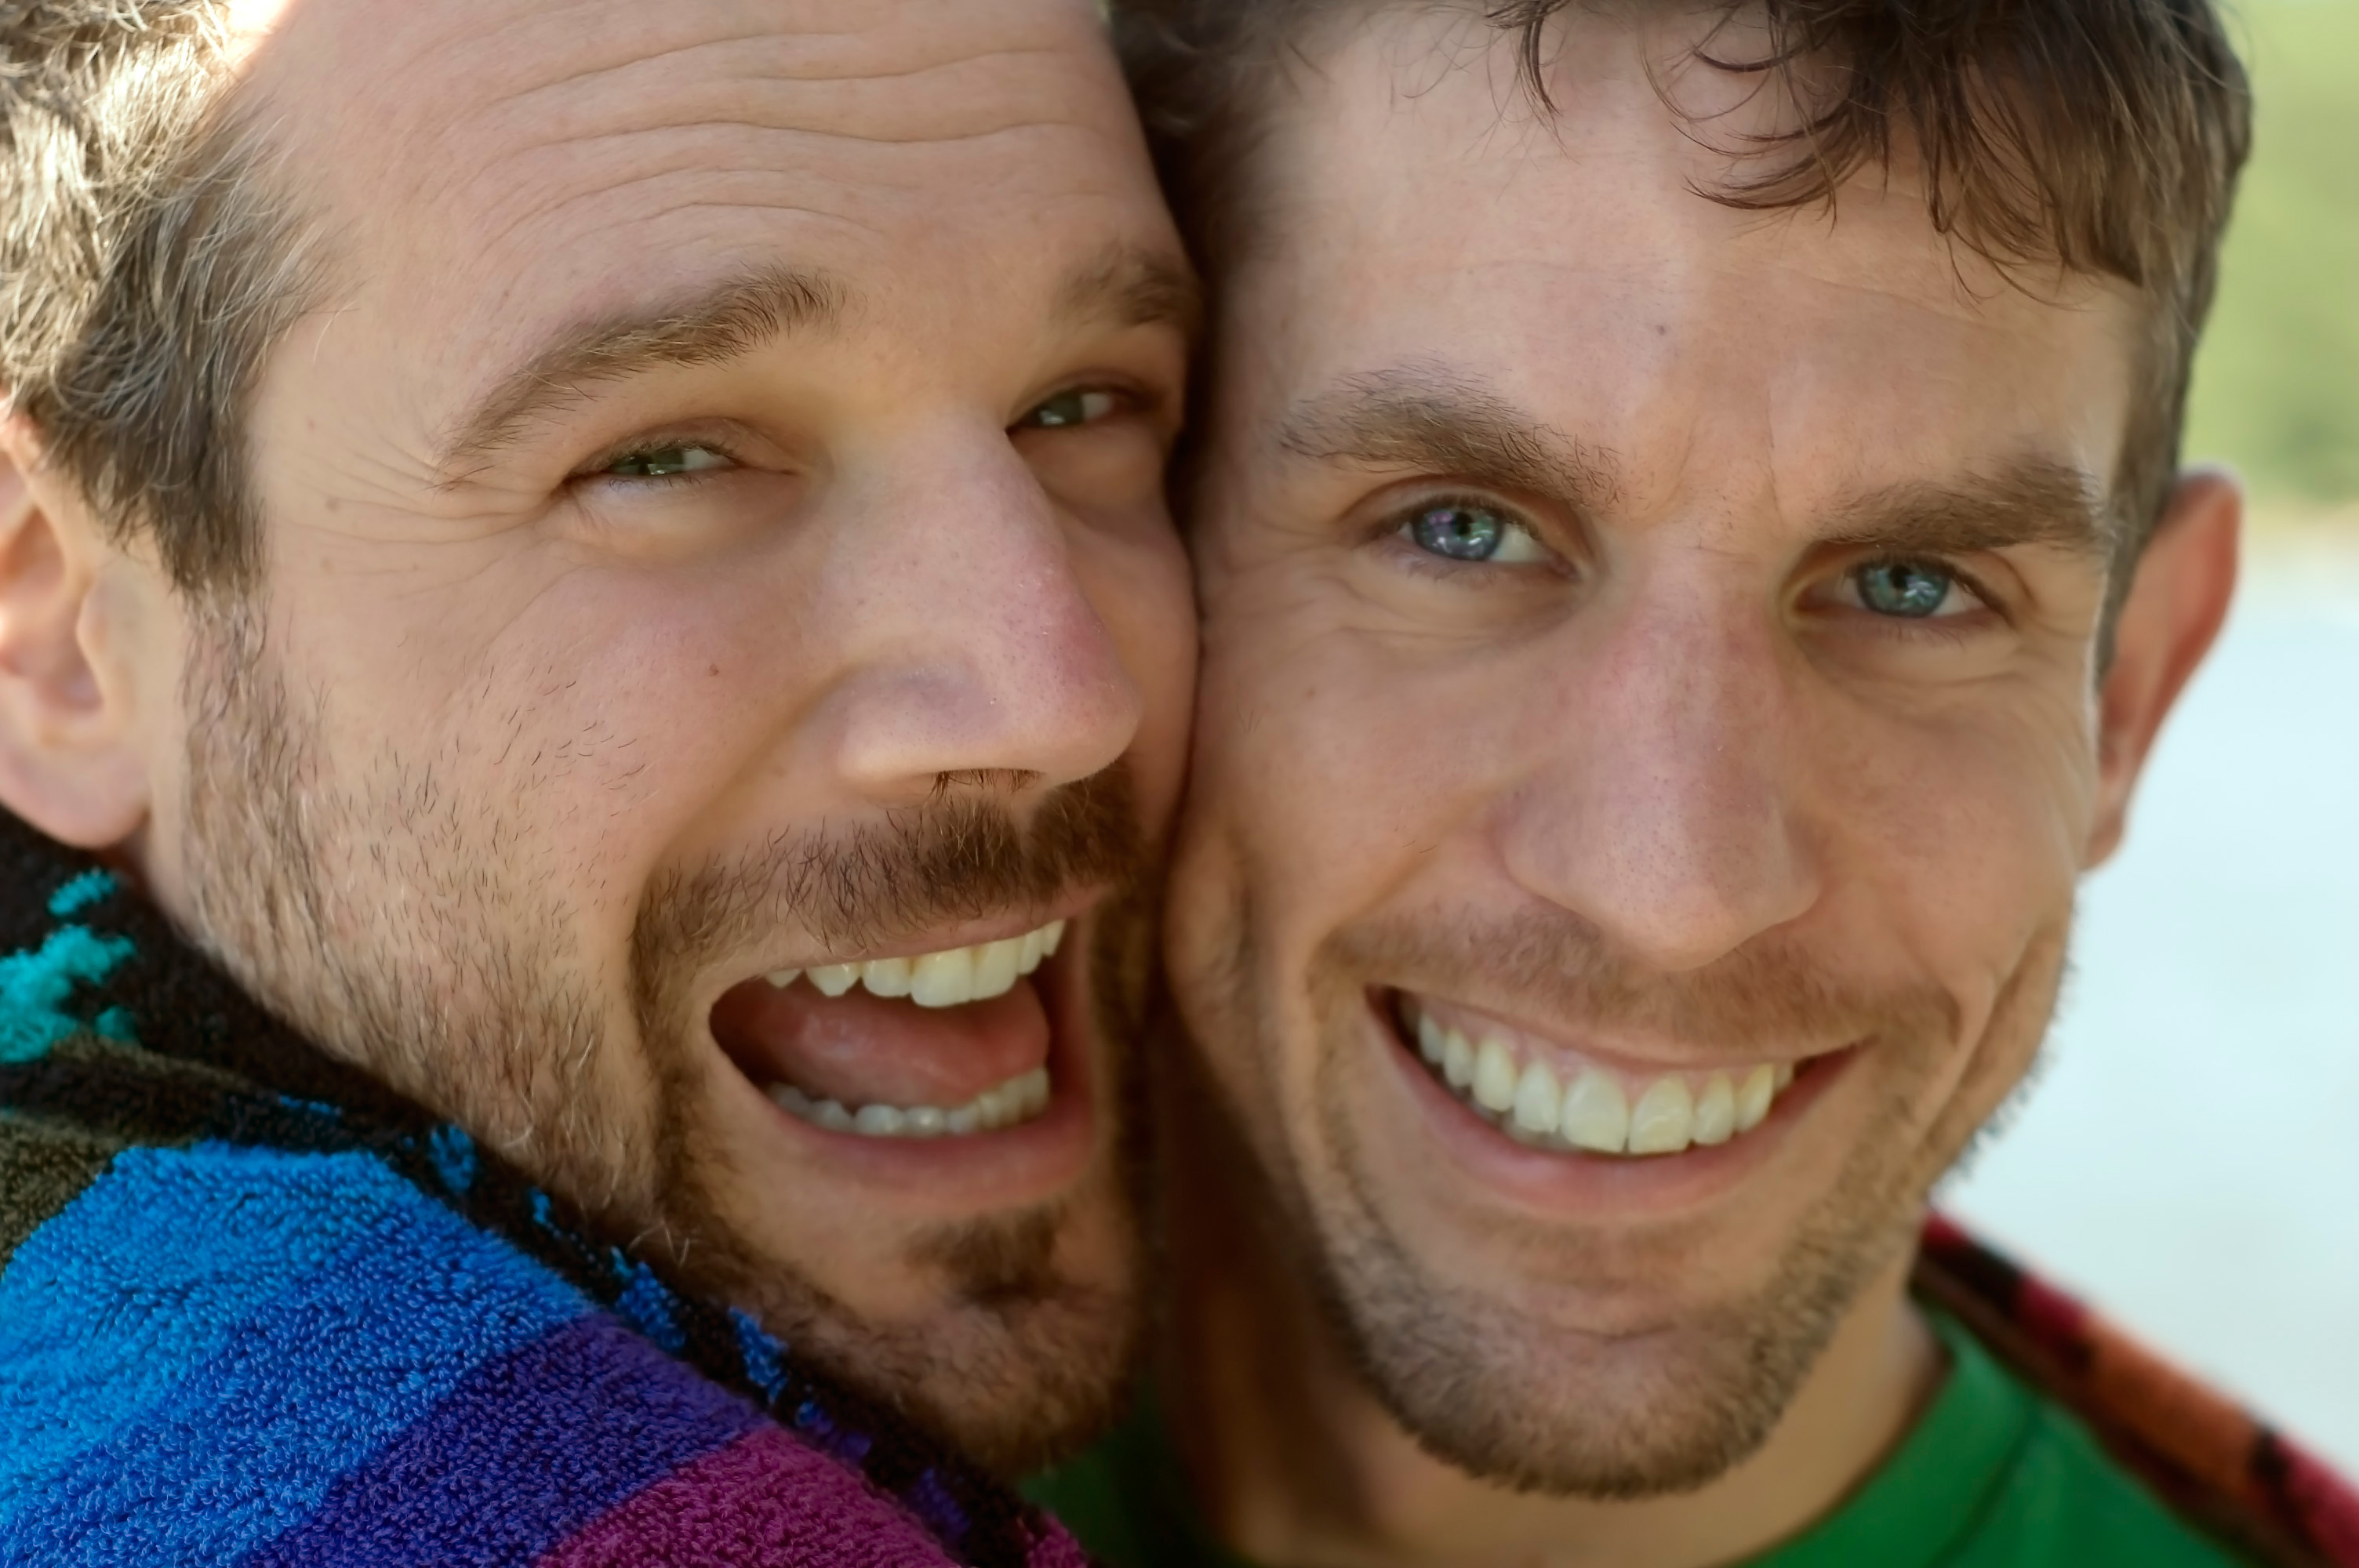 Сайт знакомств для геев GayFriendly - Оналйн общение, чат, поиск gay (гей) партнёров рядом